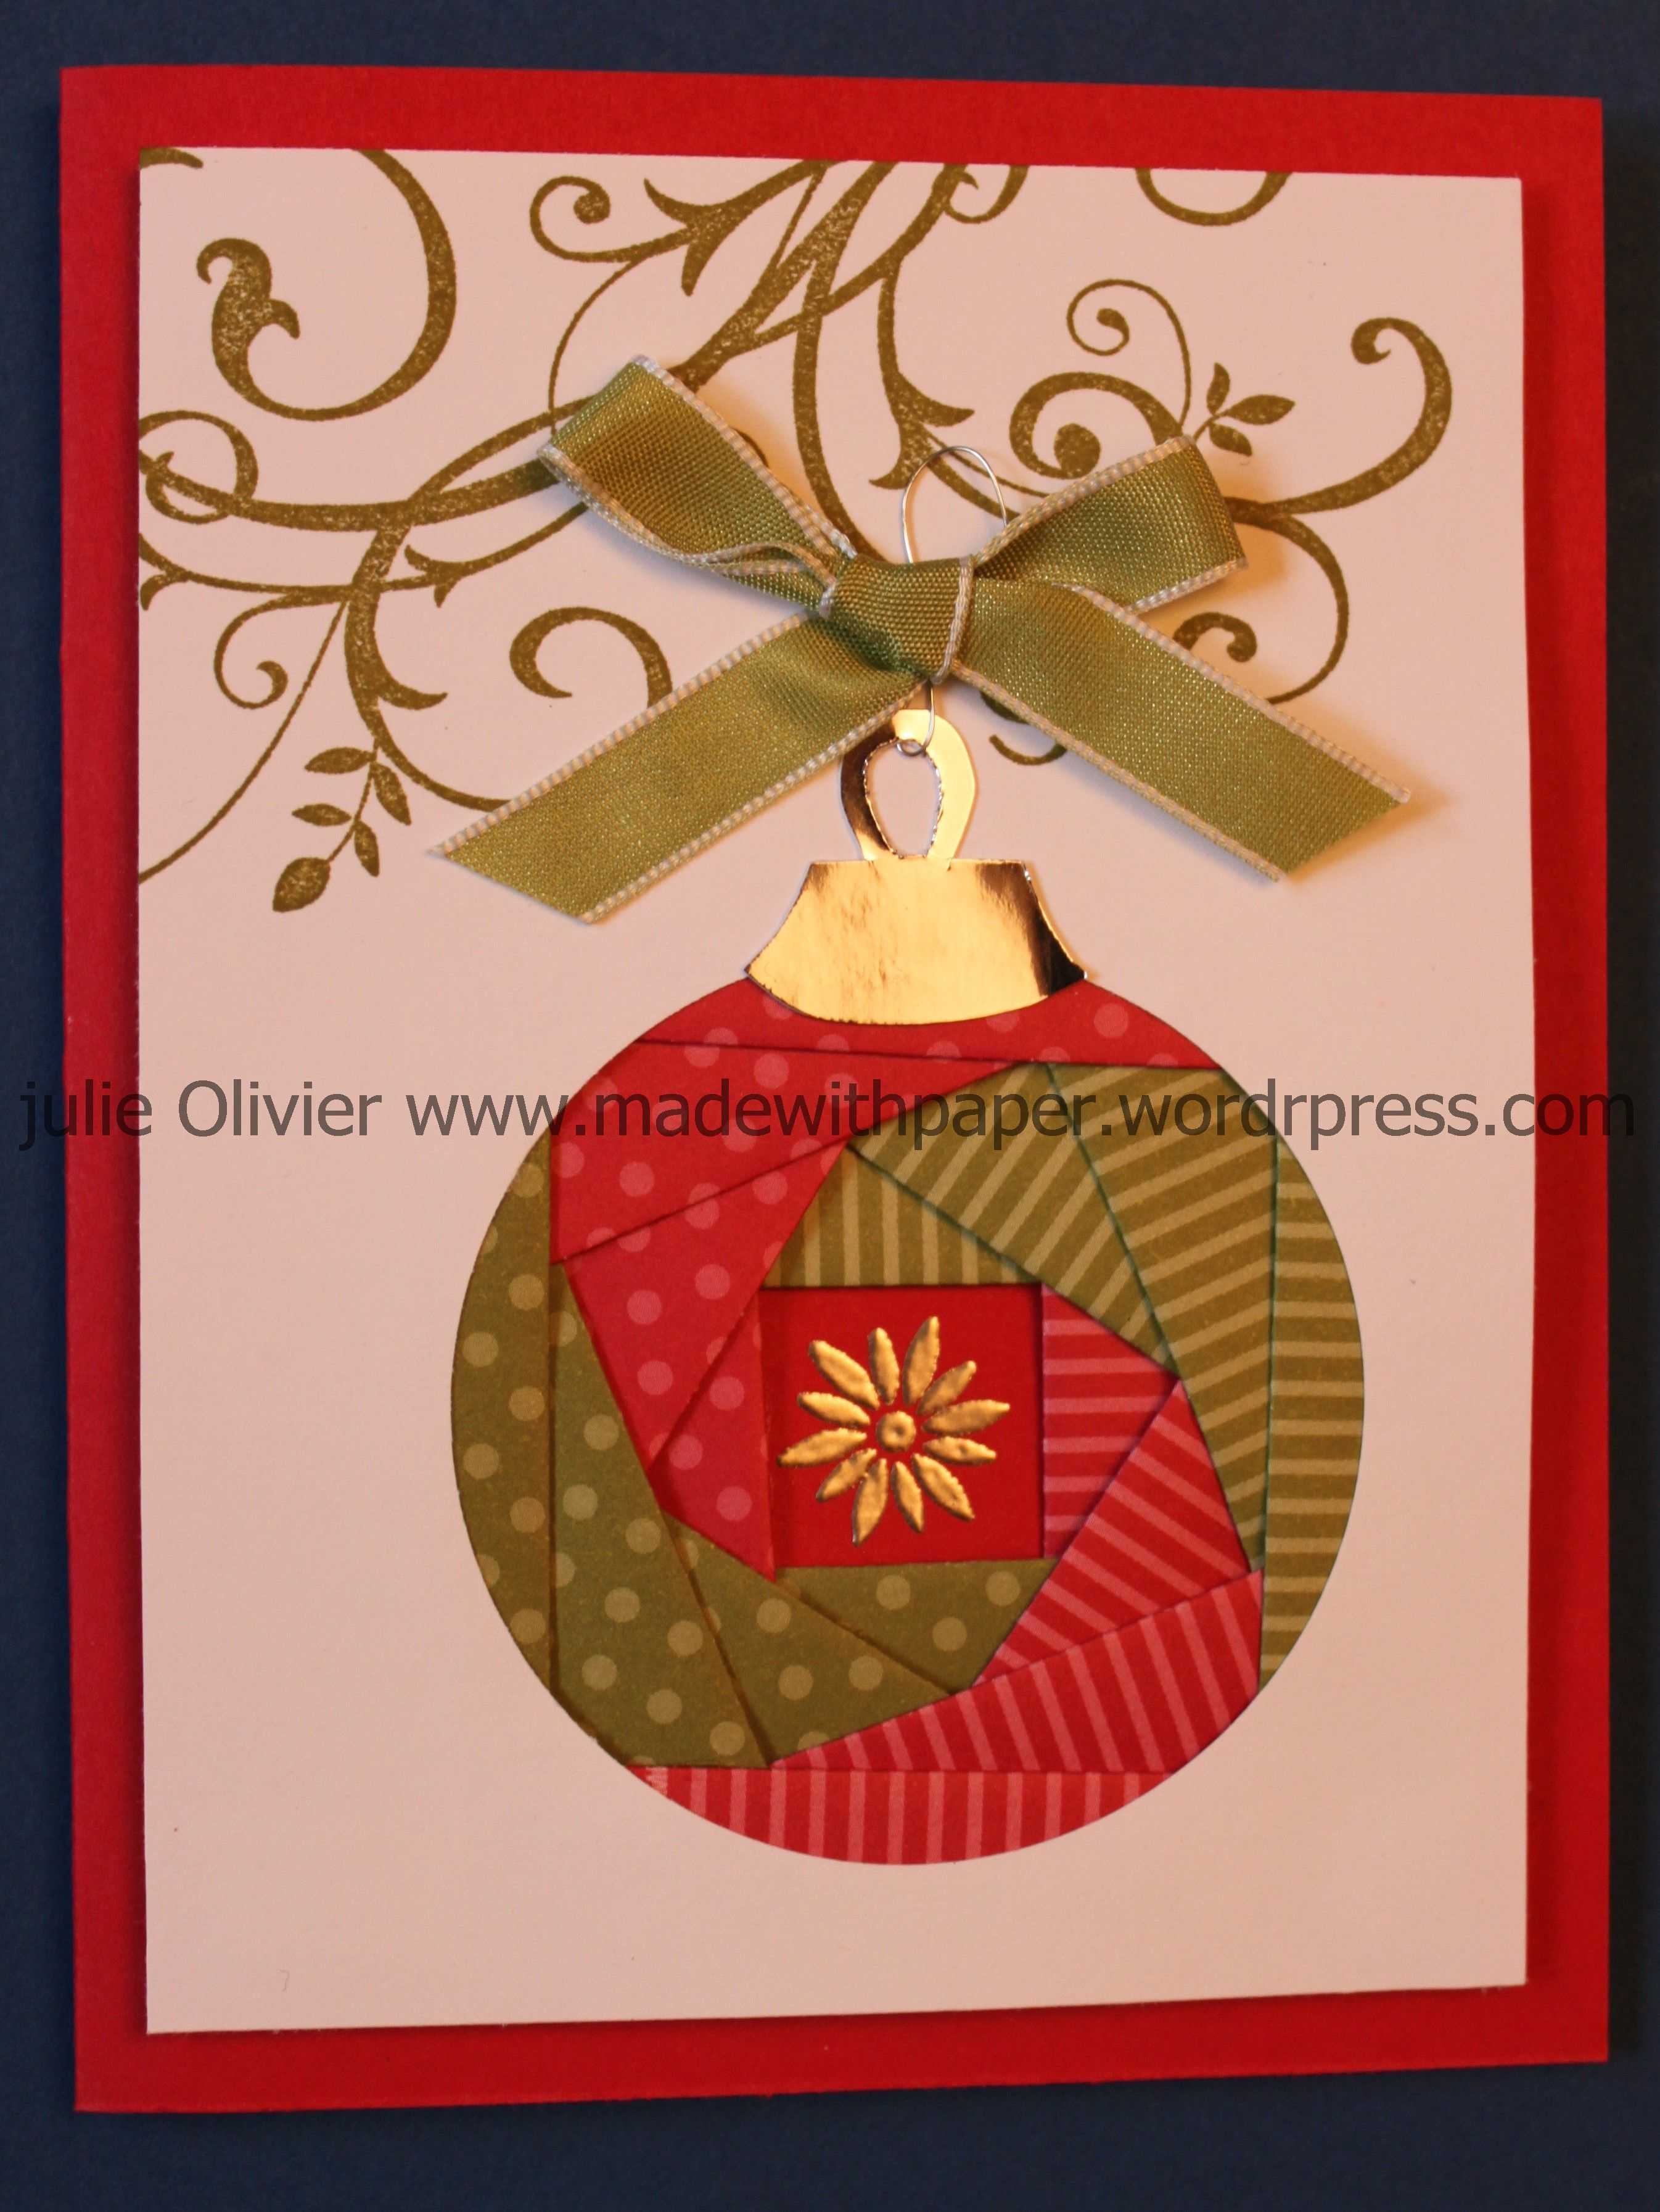 Iris Folding: Christmas Ornament | Cards - Iris Folding Within Iris Folding Christmas Cards Templates